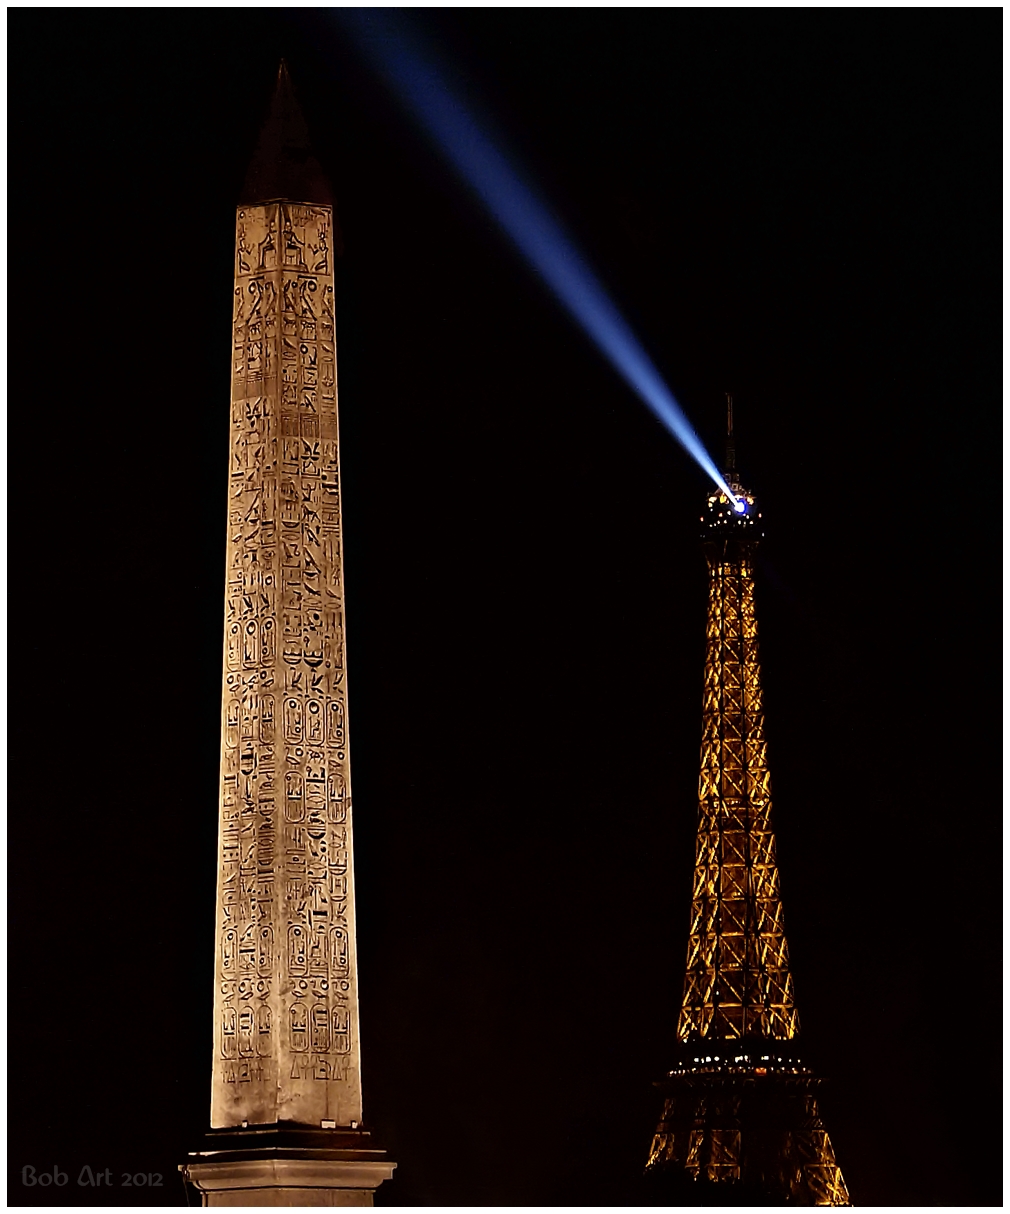 Obelisque Paris Origine